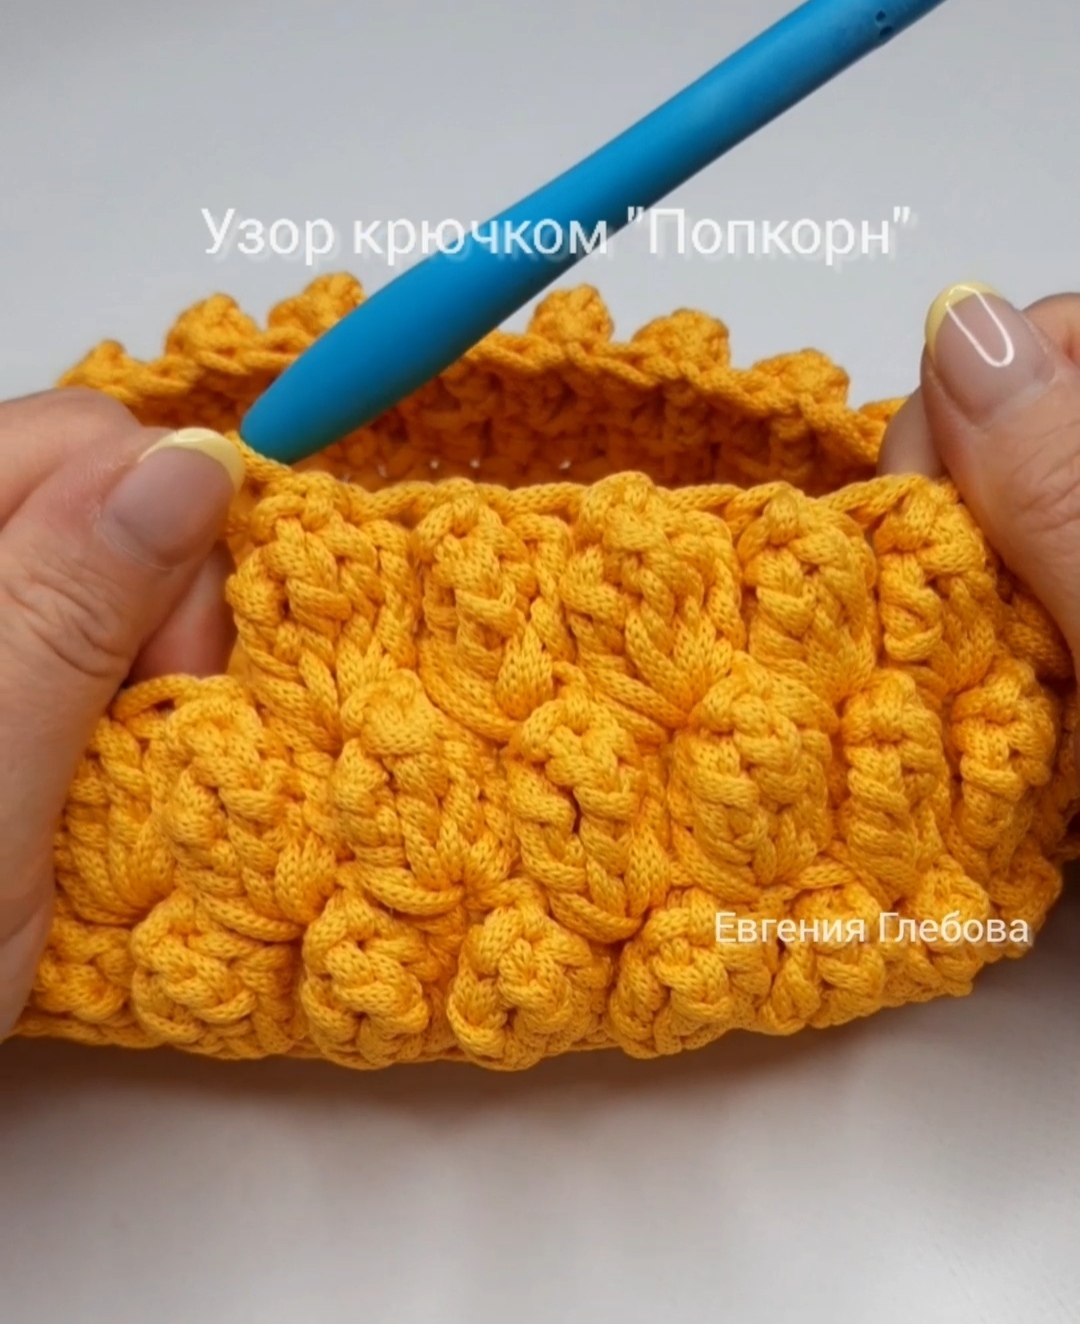 Очень простой узор крючком "Попкорн" #мквязание #вязаниекрючком #tutorial ##knitting